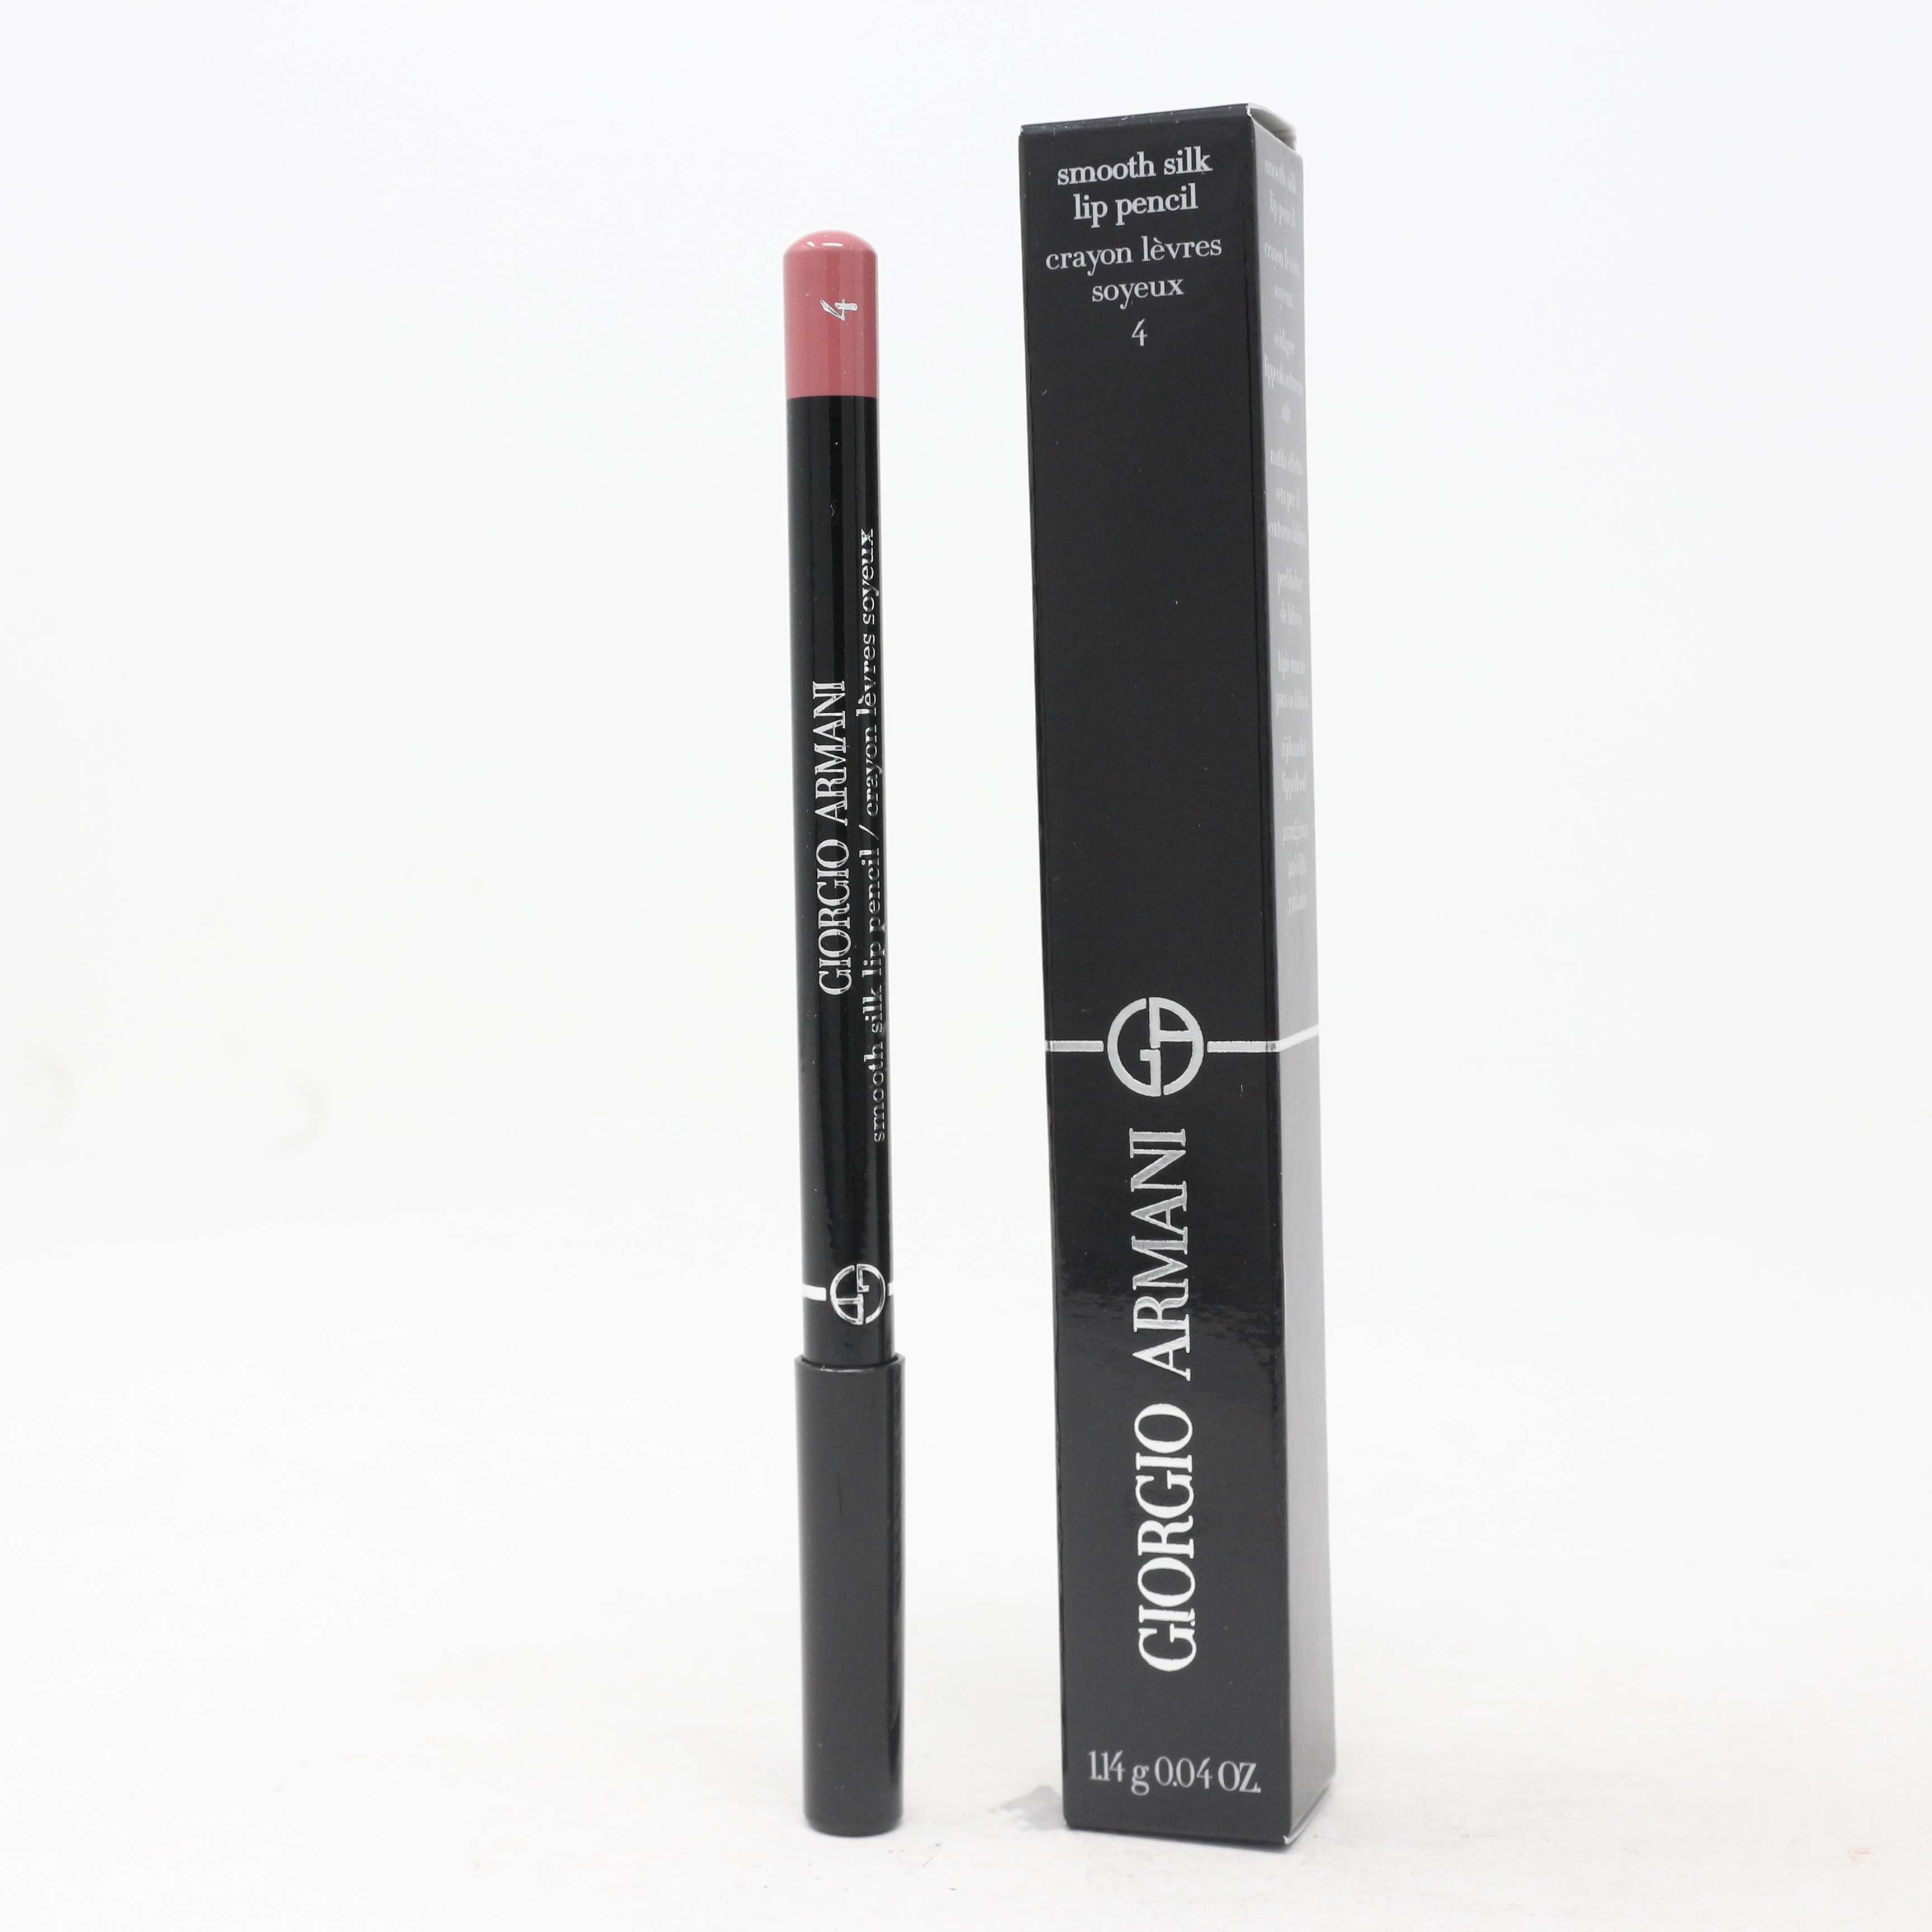 Giorgio Armani Smooth Silk Lip Pencil / New With Box | eBay